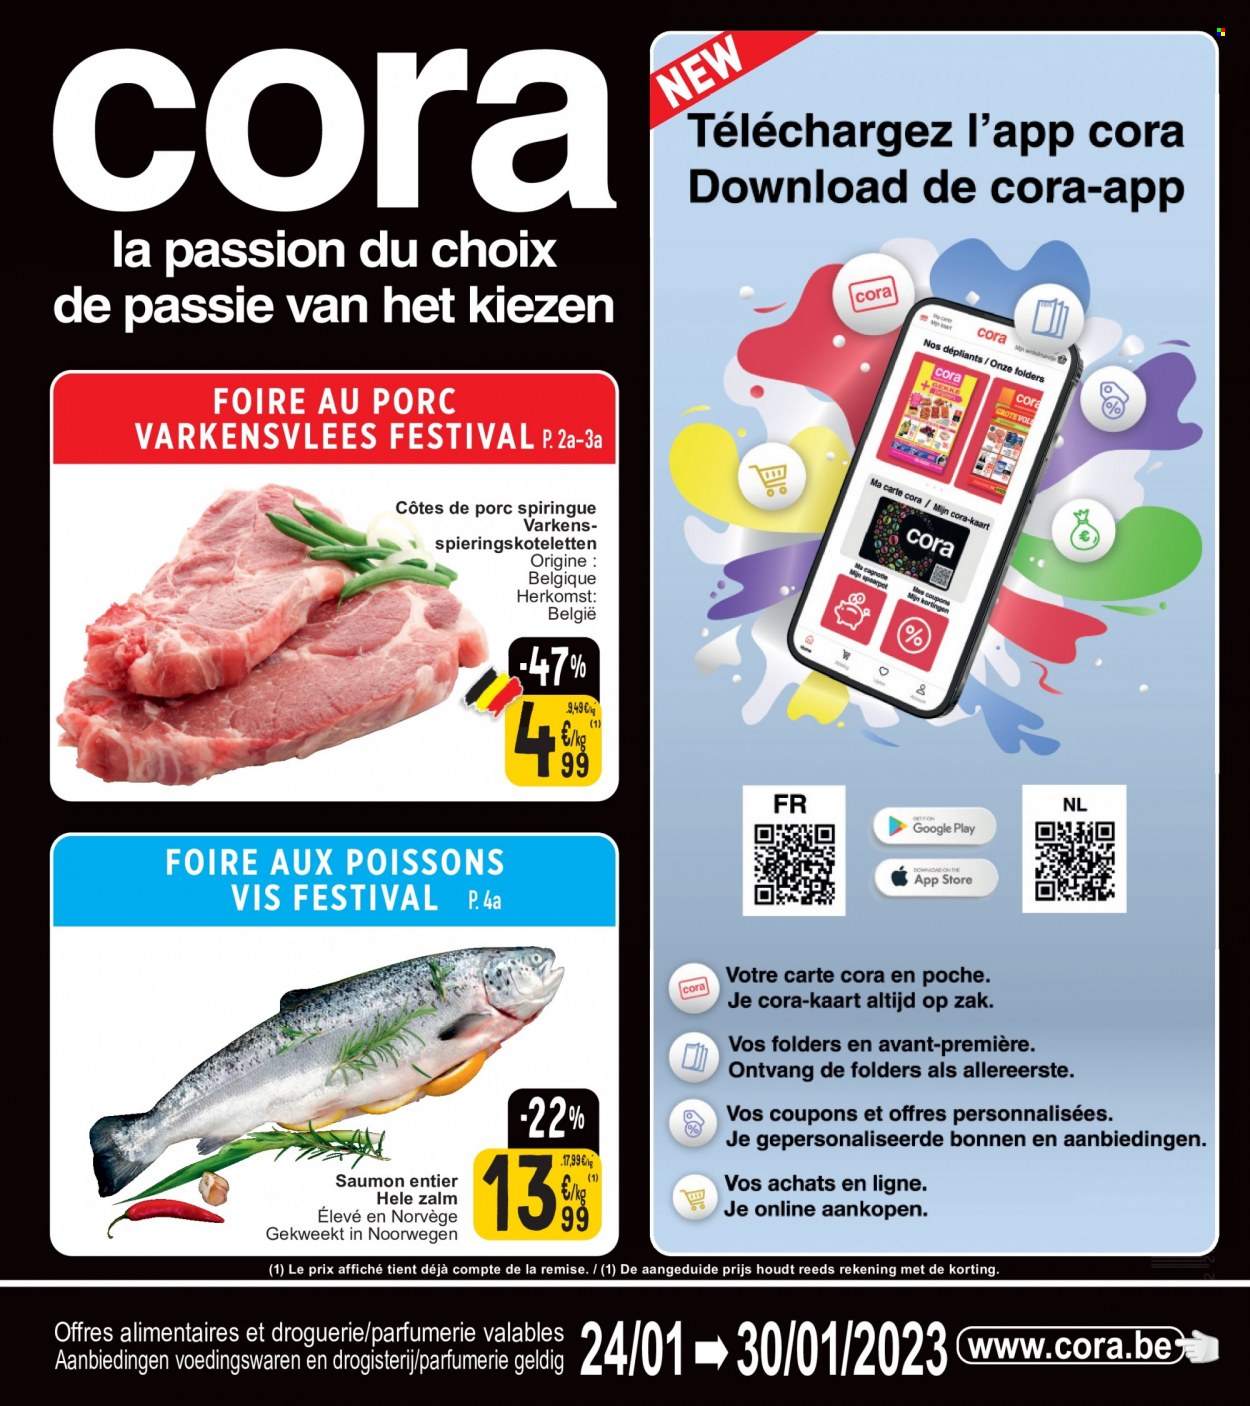 Cora-aanbieding - 24/01/2023 - 30/01/2023 -  producten in de aanbieding - varkensvlees, zalm, messen. Pagina 1.